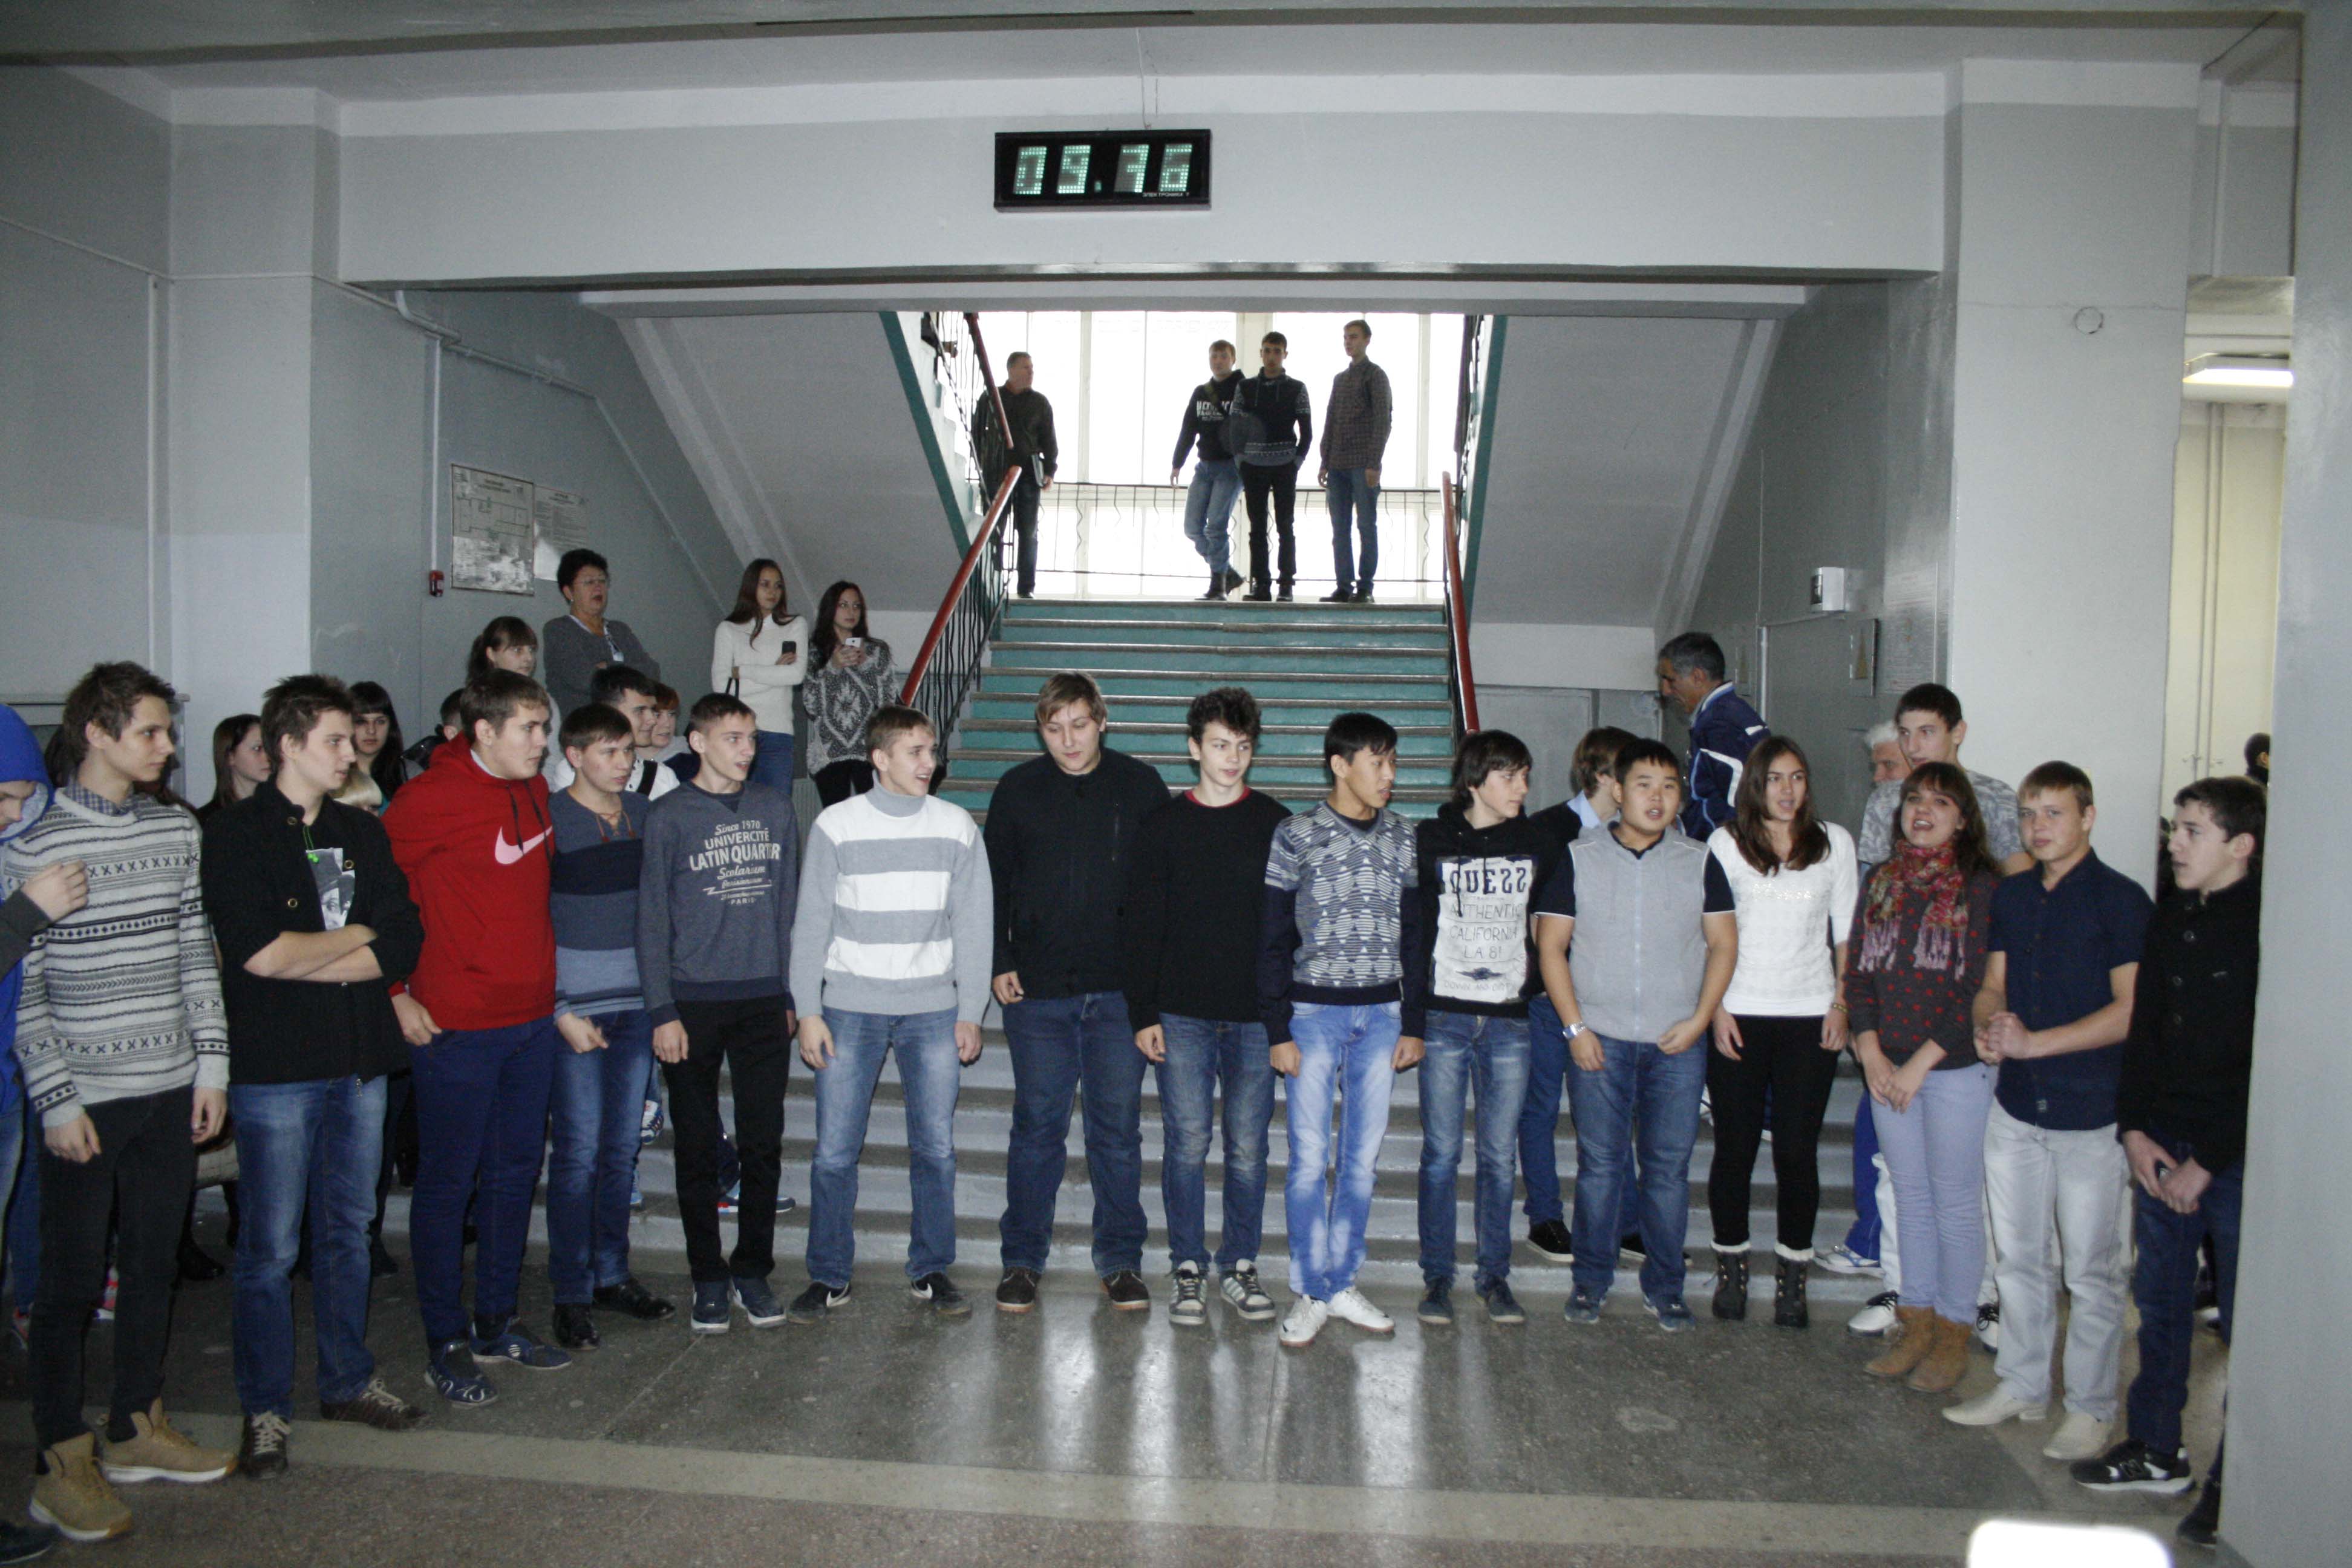 Международный день студентов  Волгоградский энергетический  колледж встретил конкурсом флэшмобов «Живут студенты весело!»